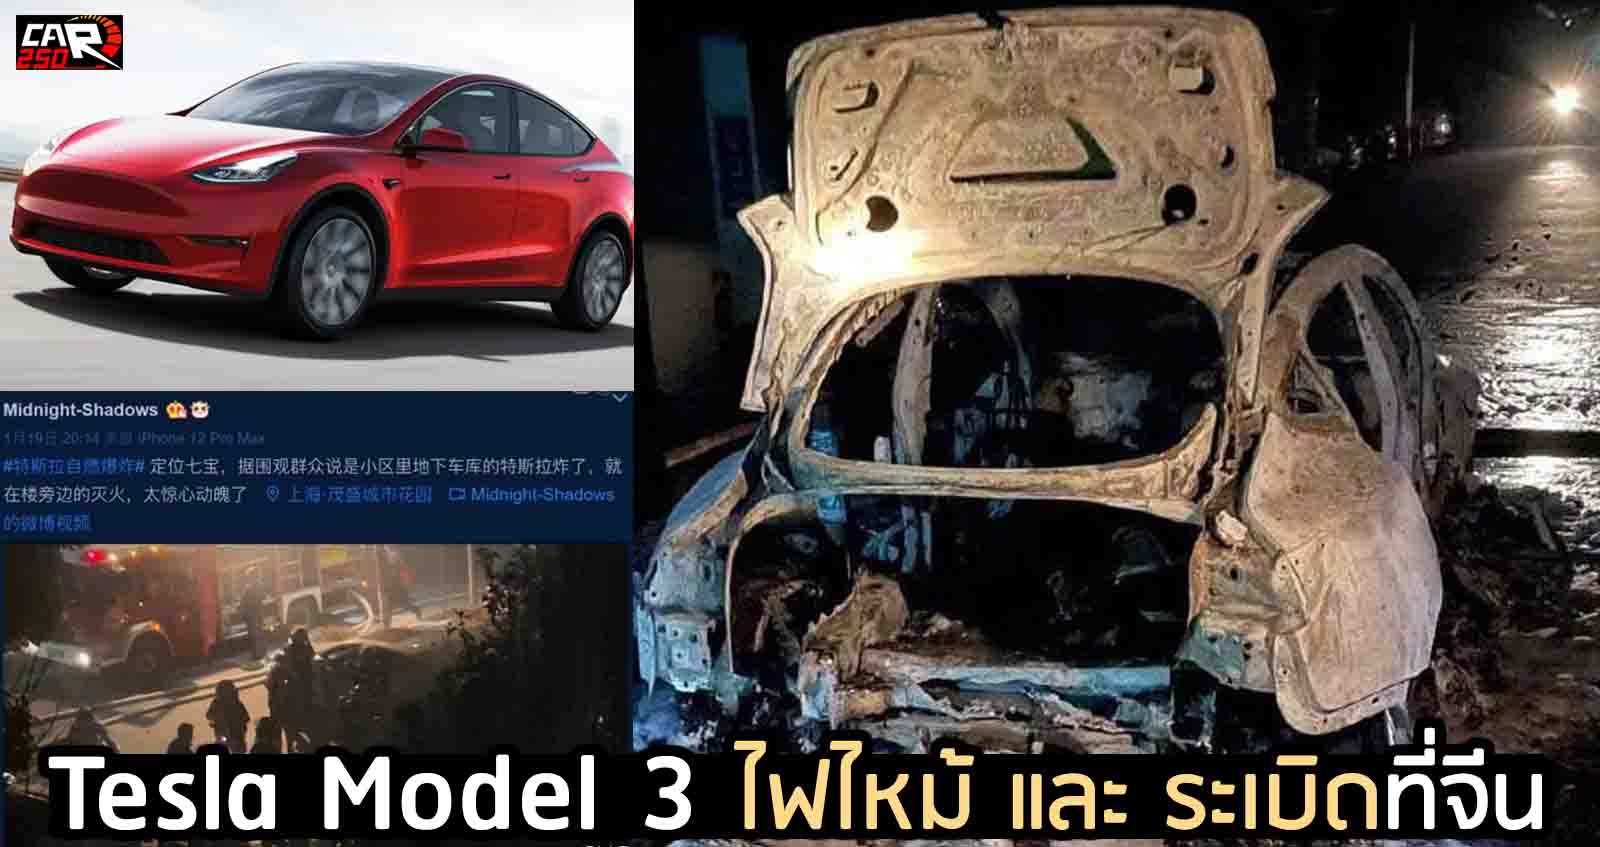 Tesla Model 3 ไฟไหม้-ระเบิด ที่จีน เมืองเซี่ยงไฮ้